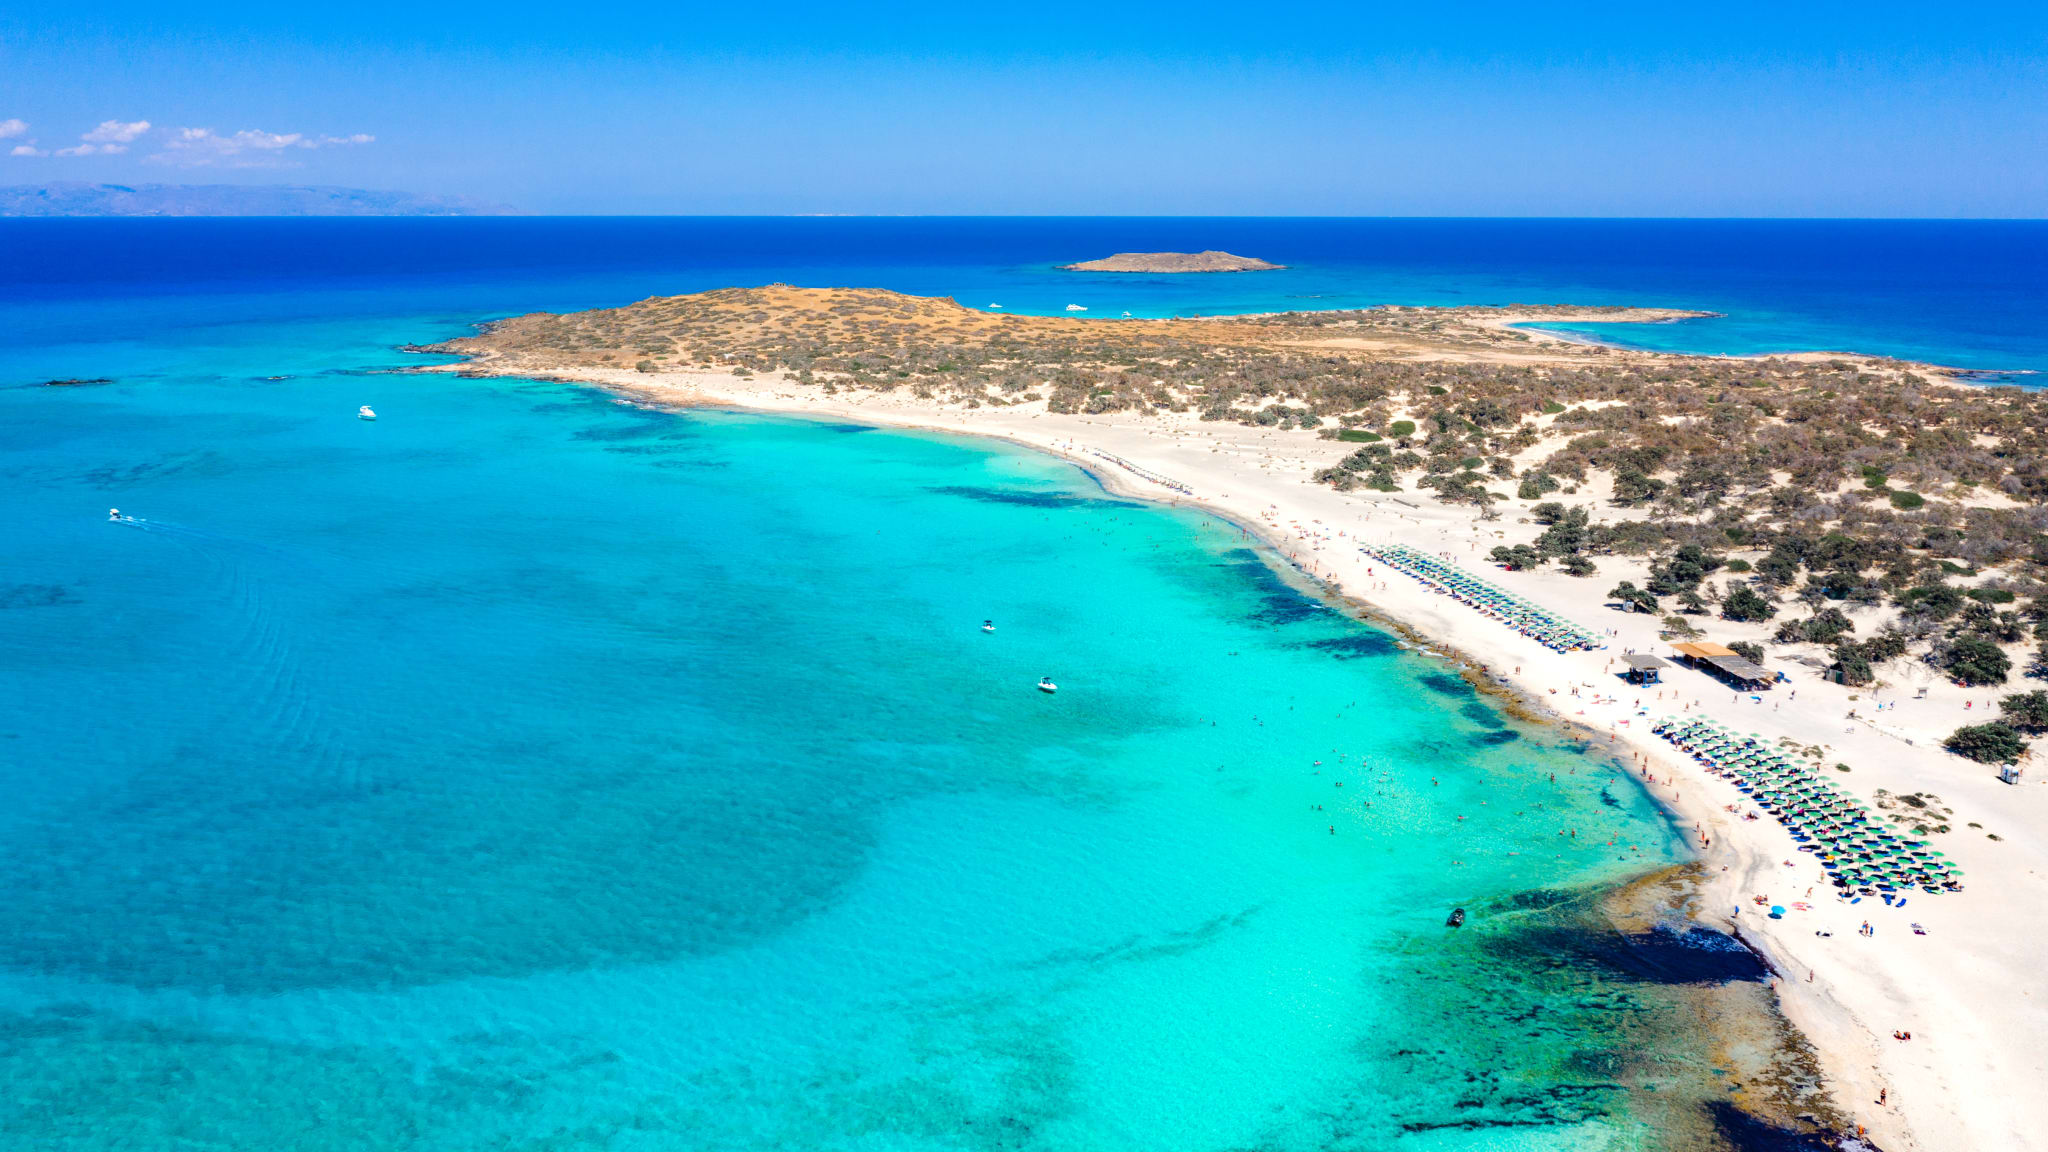 Luftaufnahme von Chrissy-Insel, Kreta